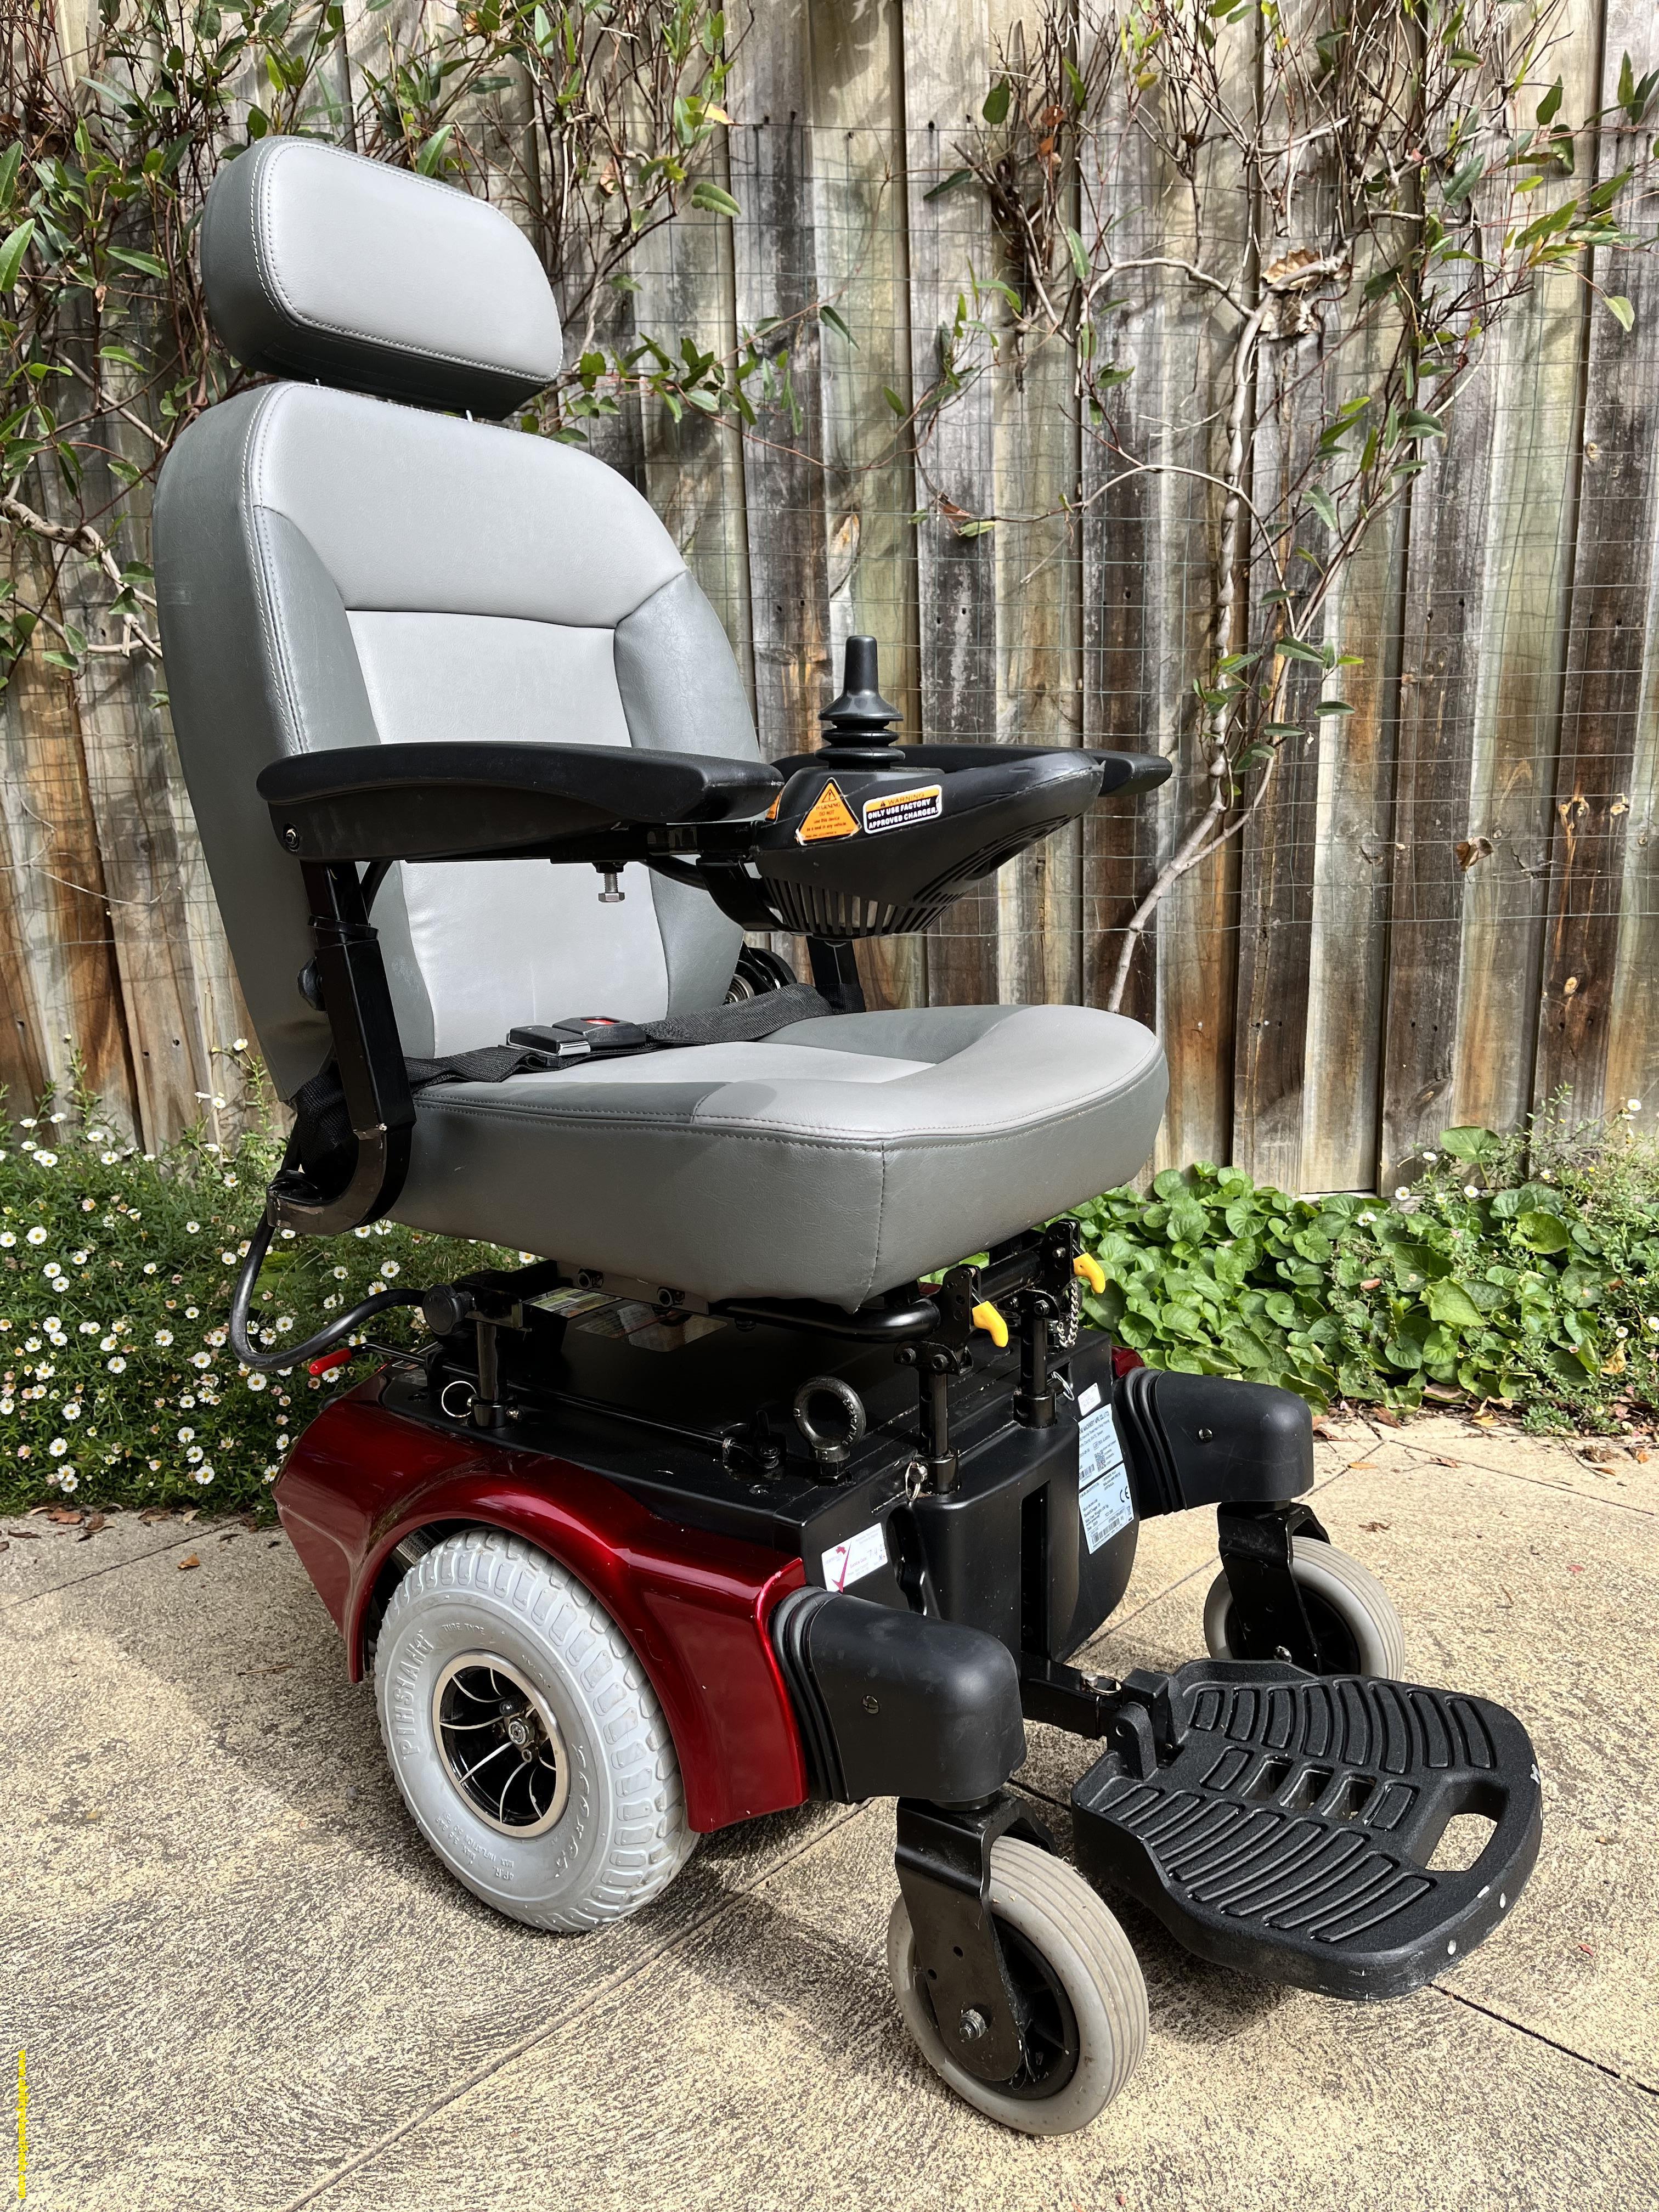 COUGAR 10 mid-wheel powerchair wheelchair